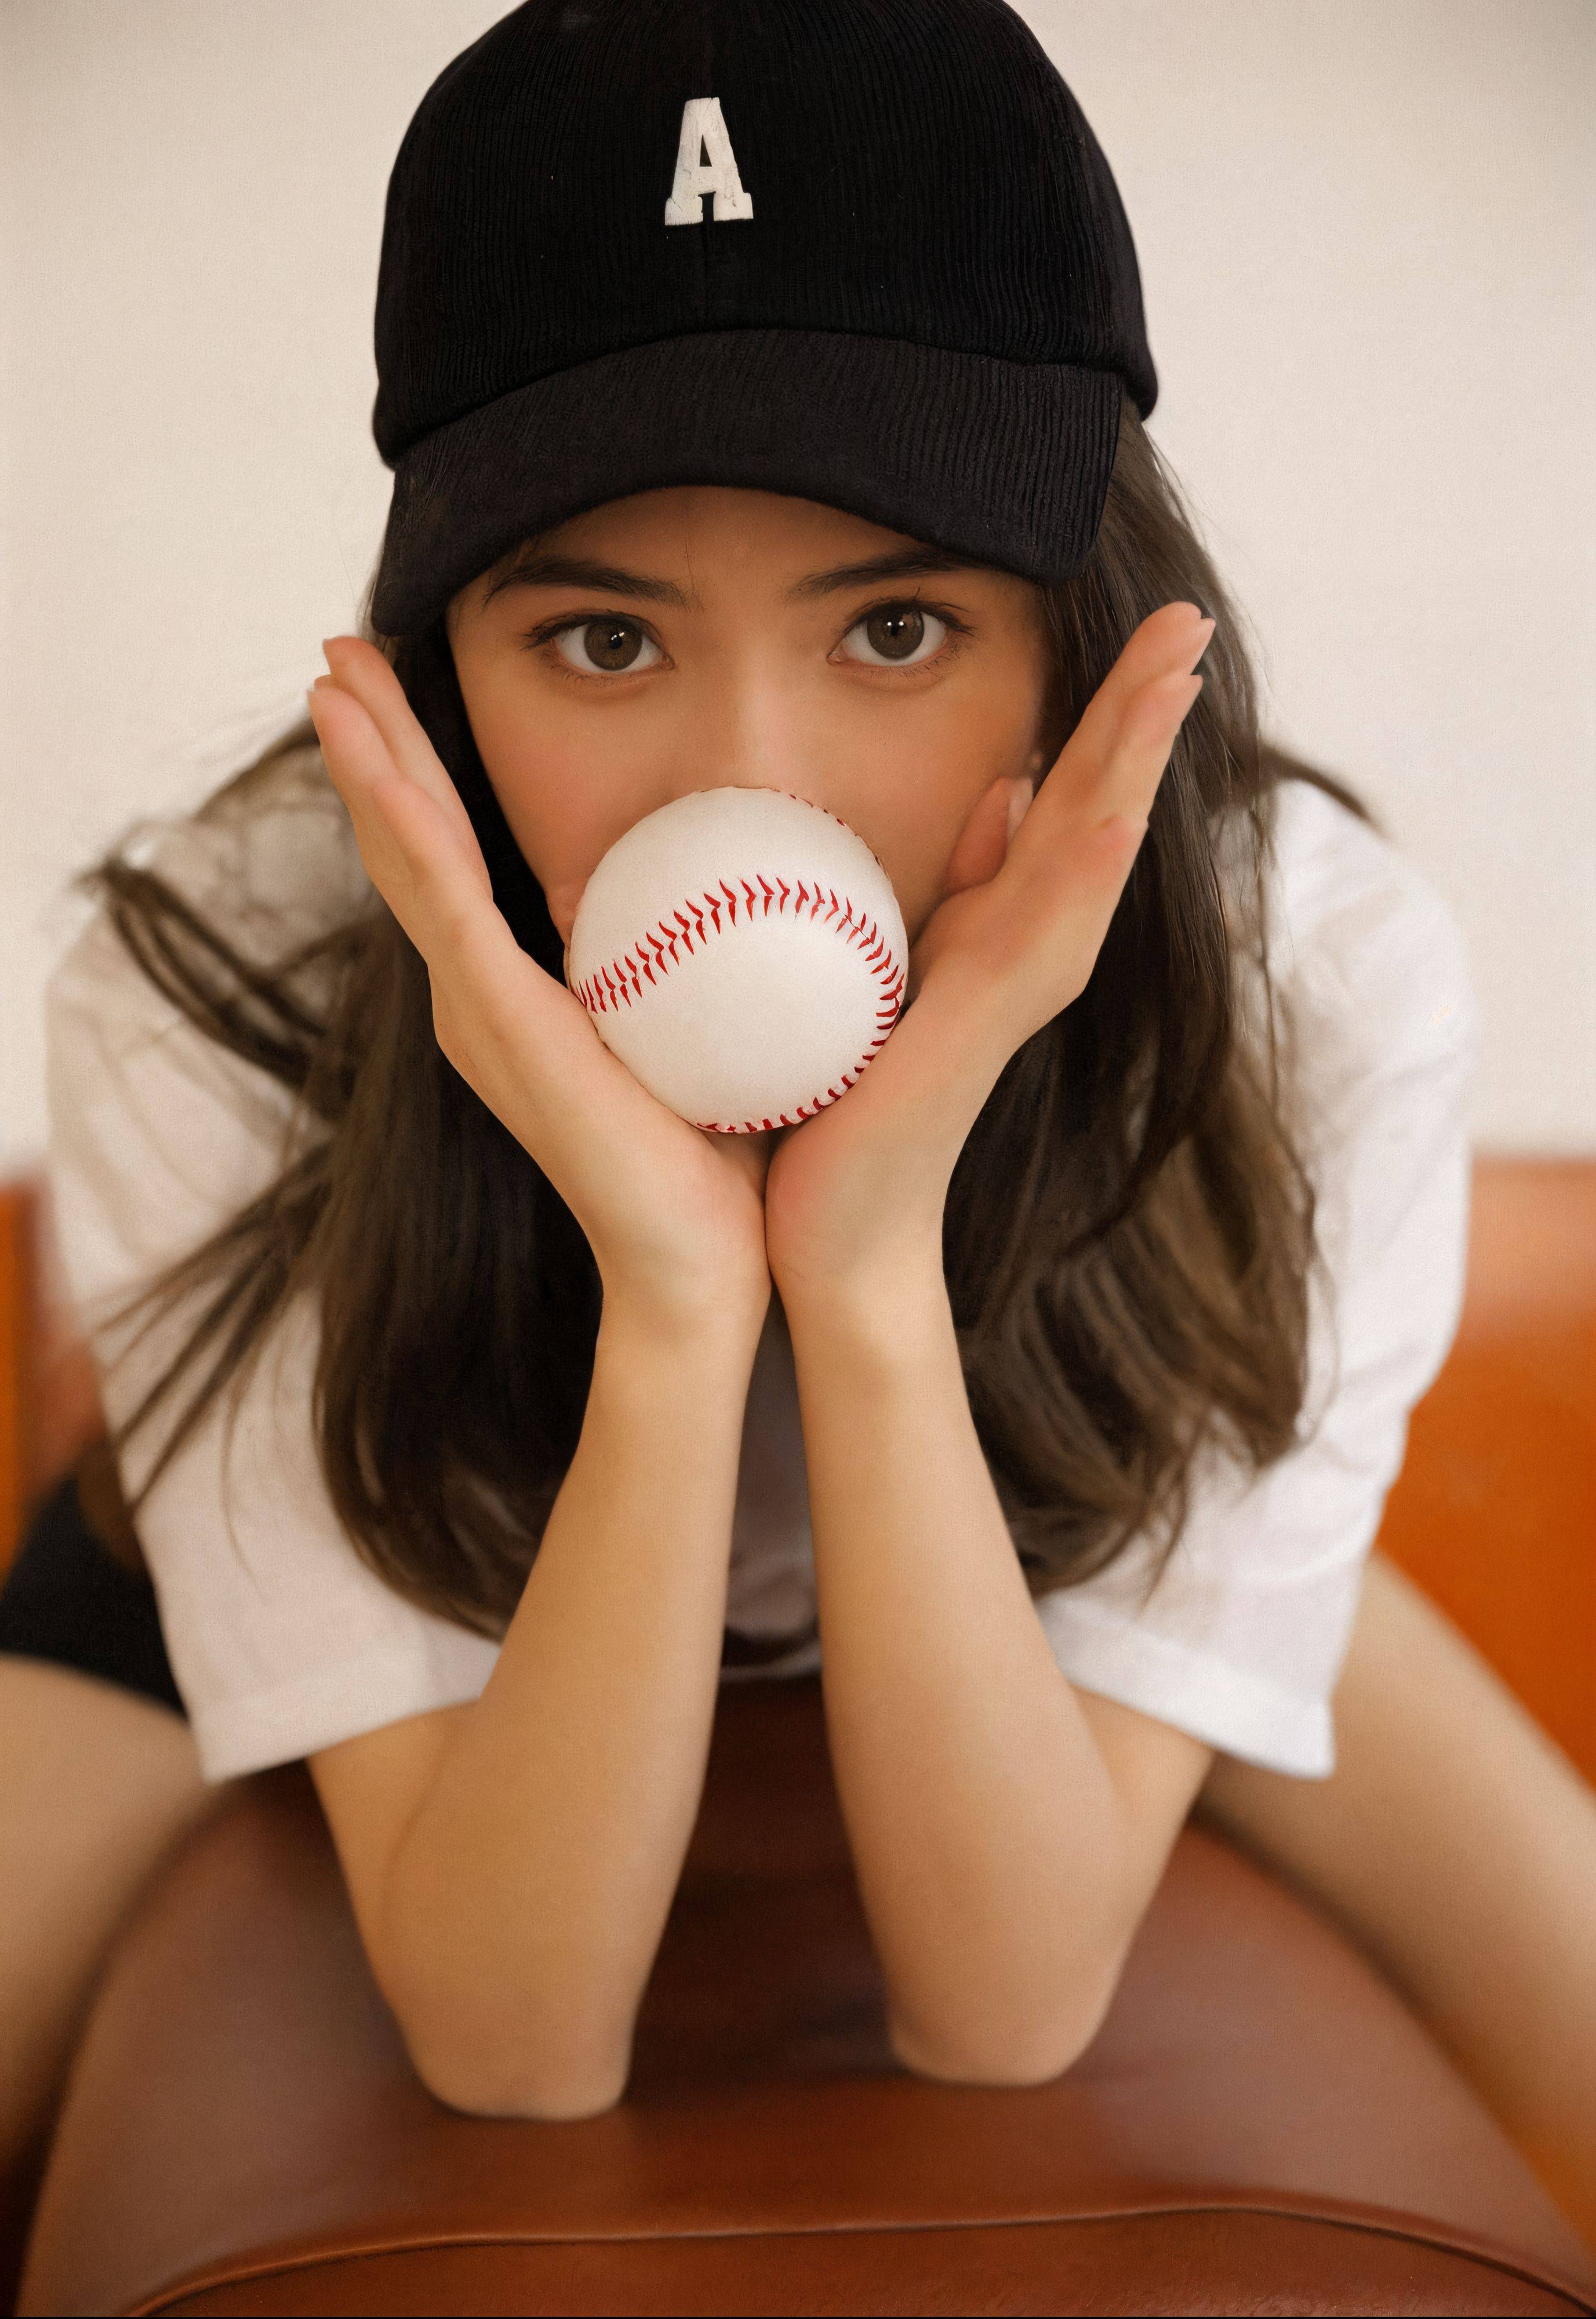 棒球:棒球场上的清新少女棒球，帽檐下的迷人笑颜